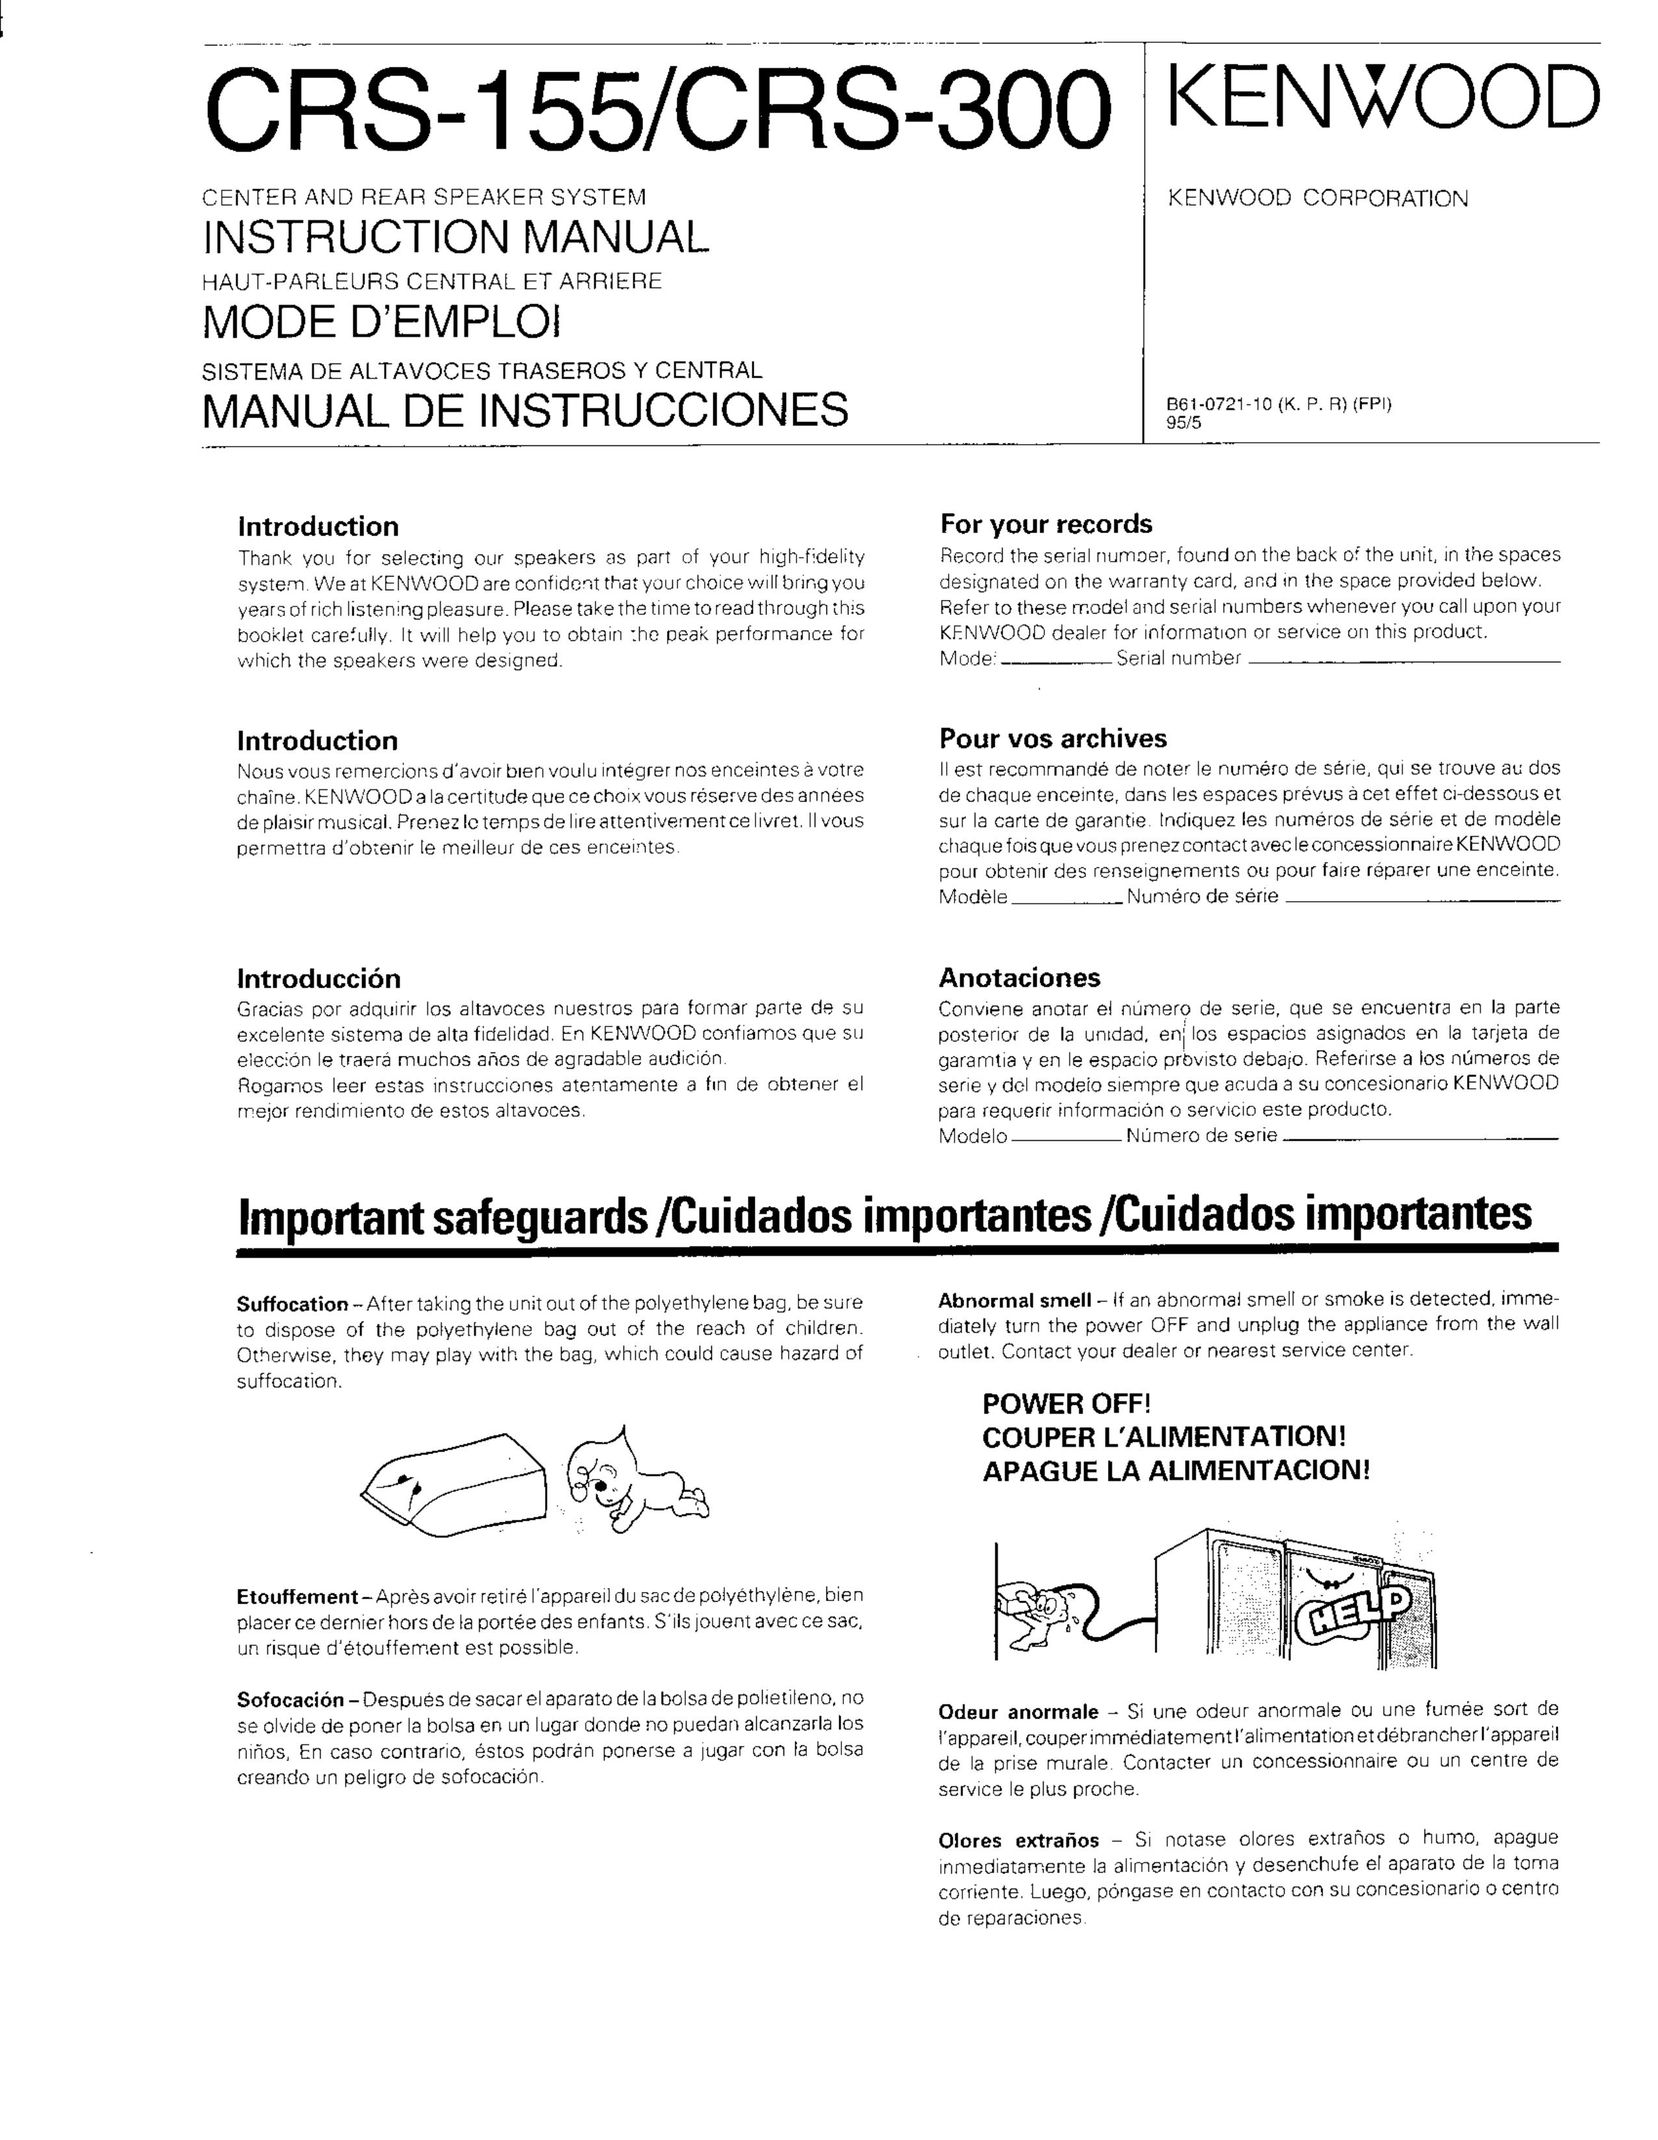 Kenwood CRS-155 Speaker System User Manual